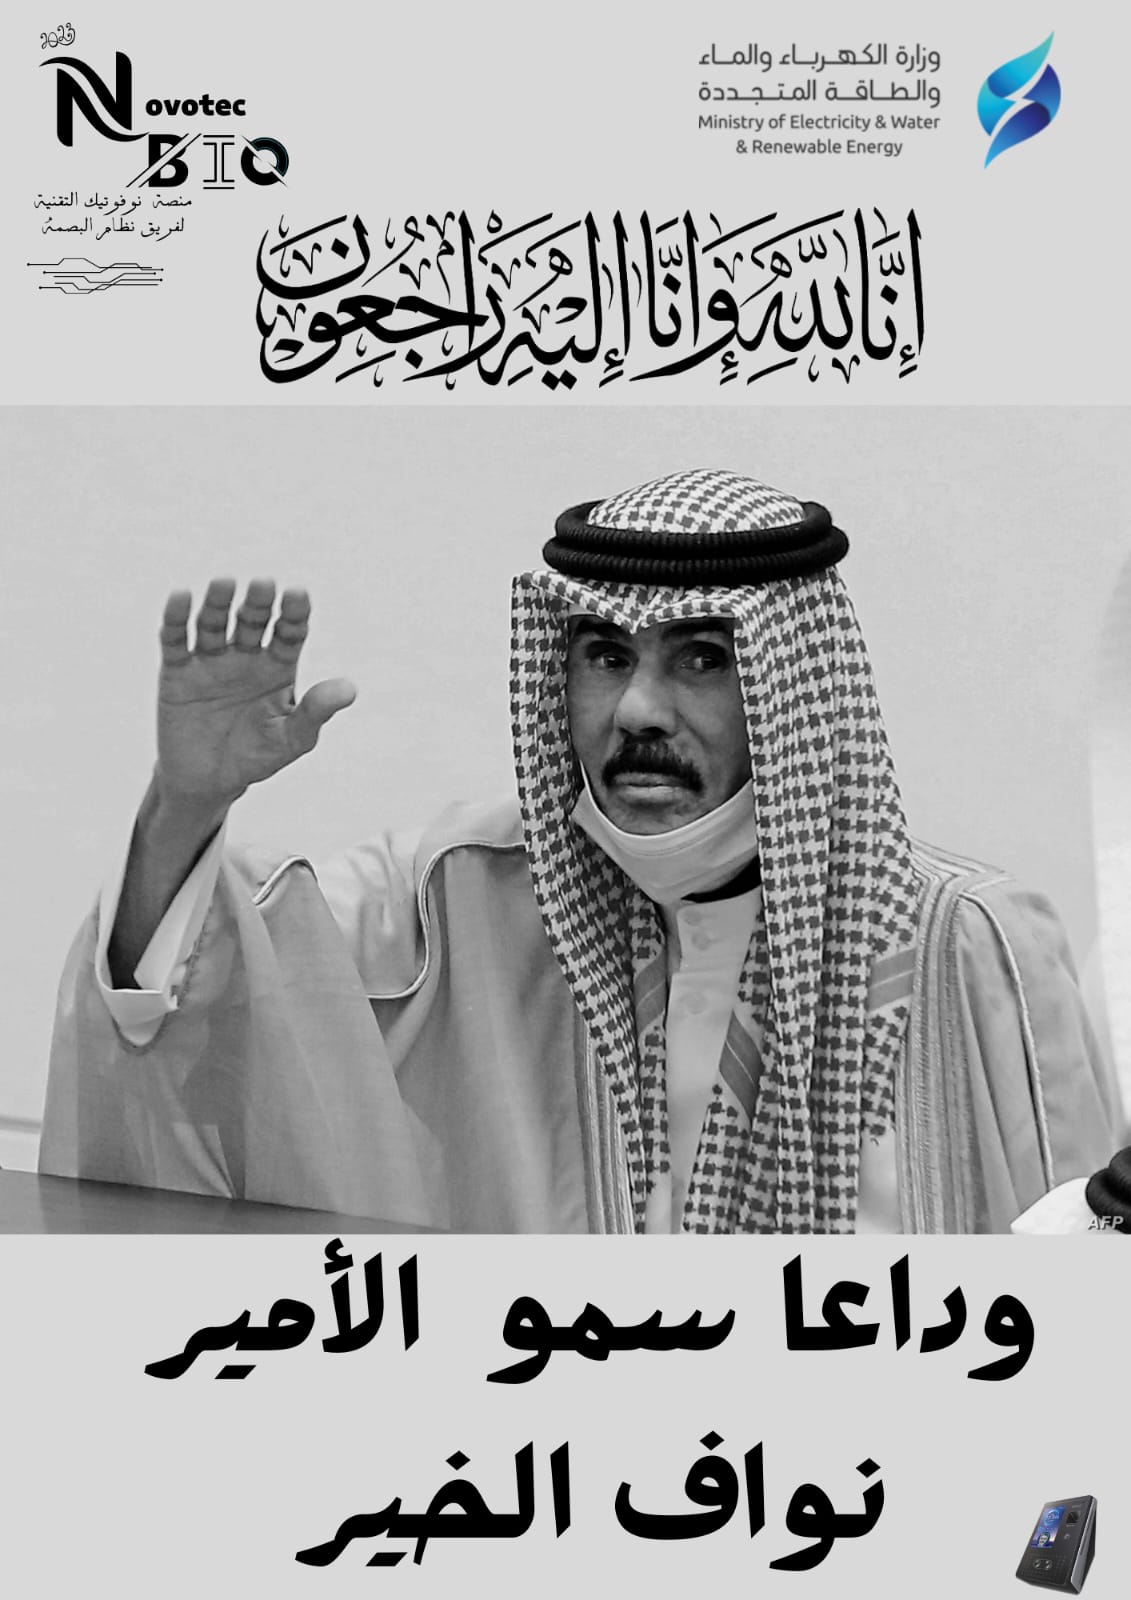 وفاة أمير دولة الكويت - وداعا نواف الخير 